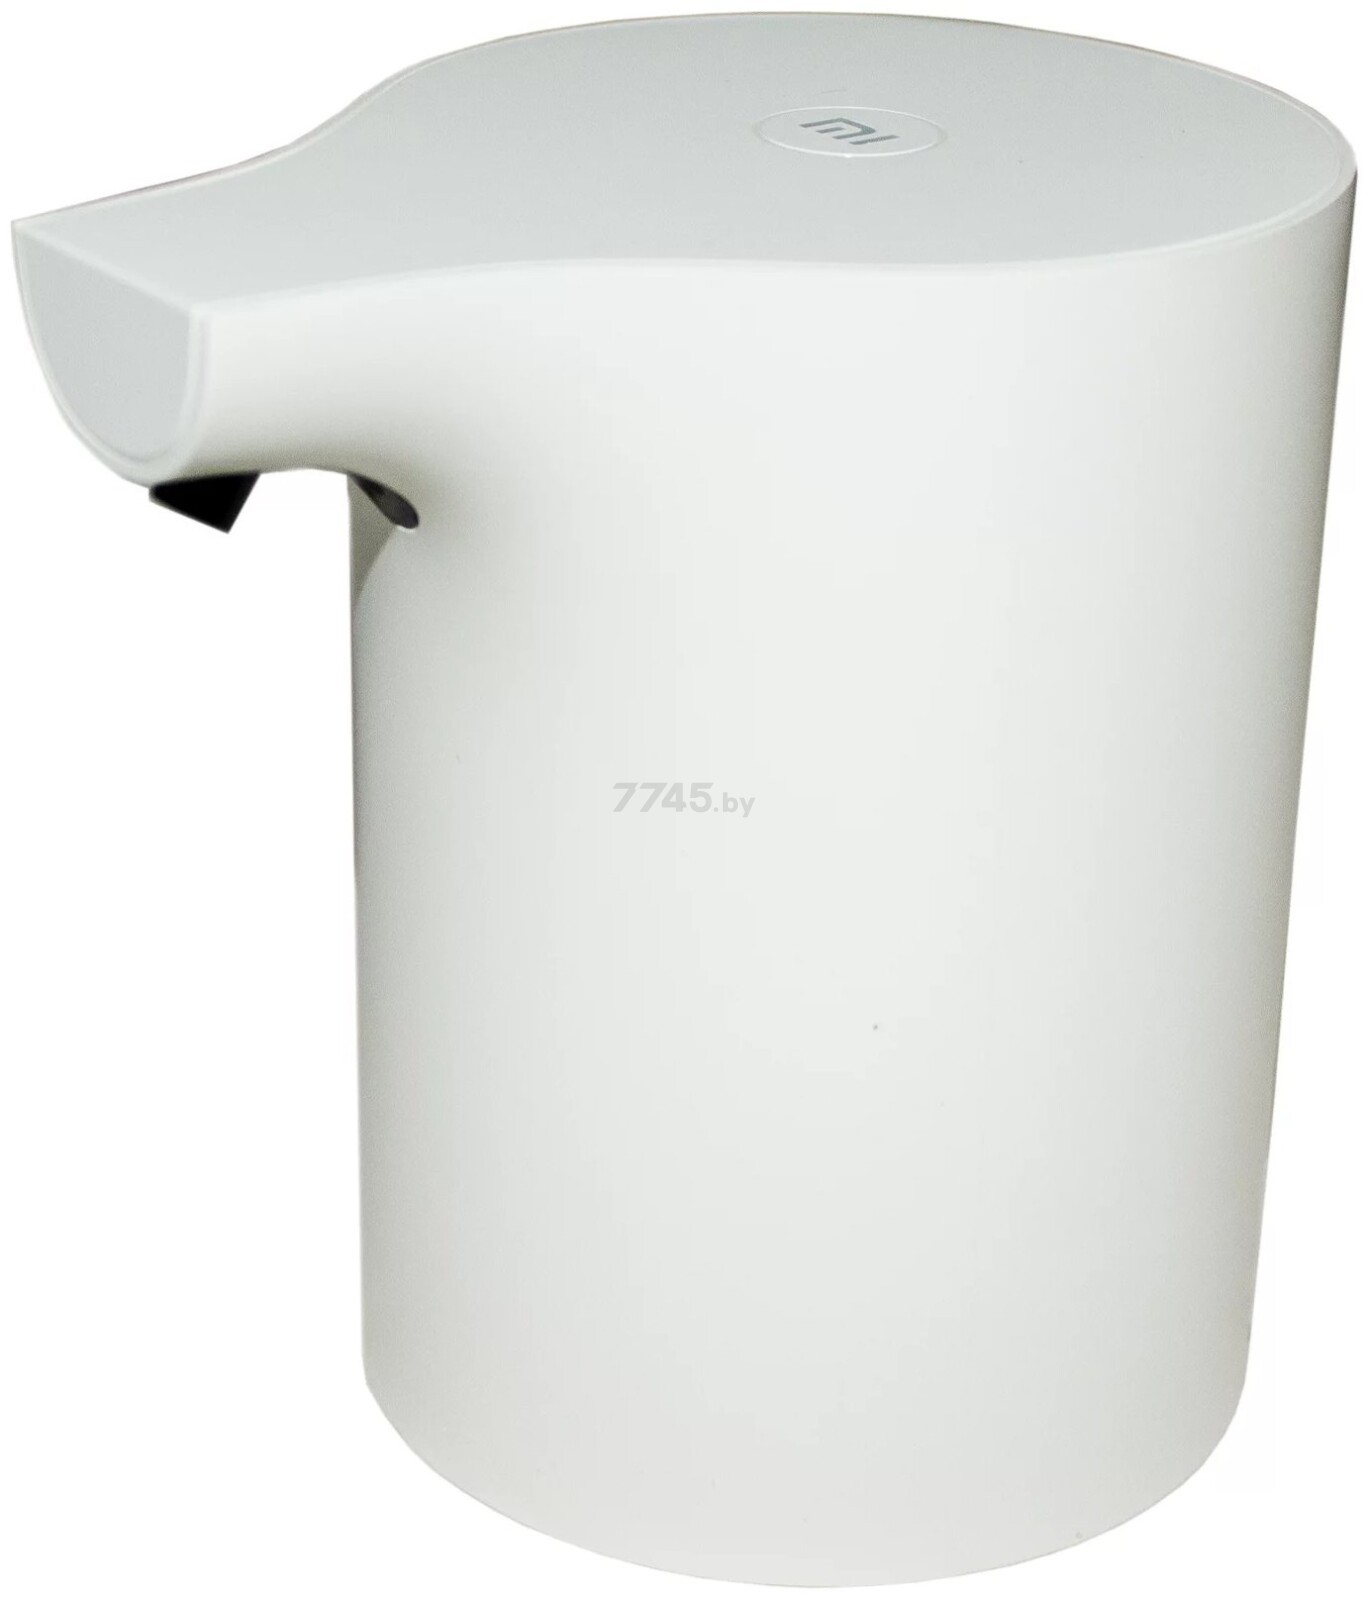 Дозатор для жидкого мыла XIAOMI Mi Automatic Foaming Soap Dispenser без картриджа (BHR4558GL) - Фото 2